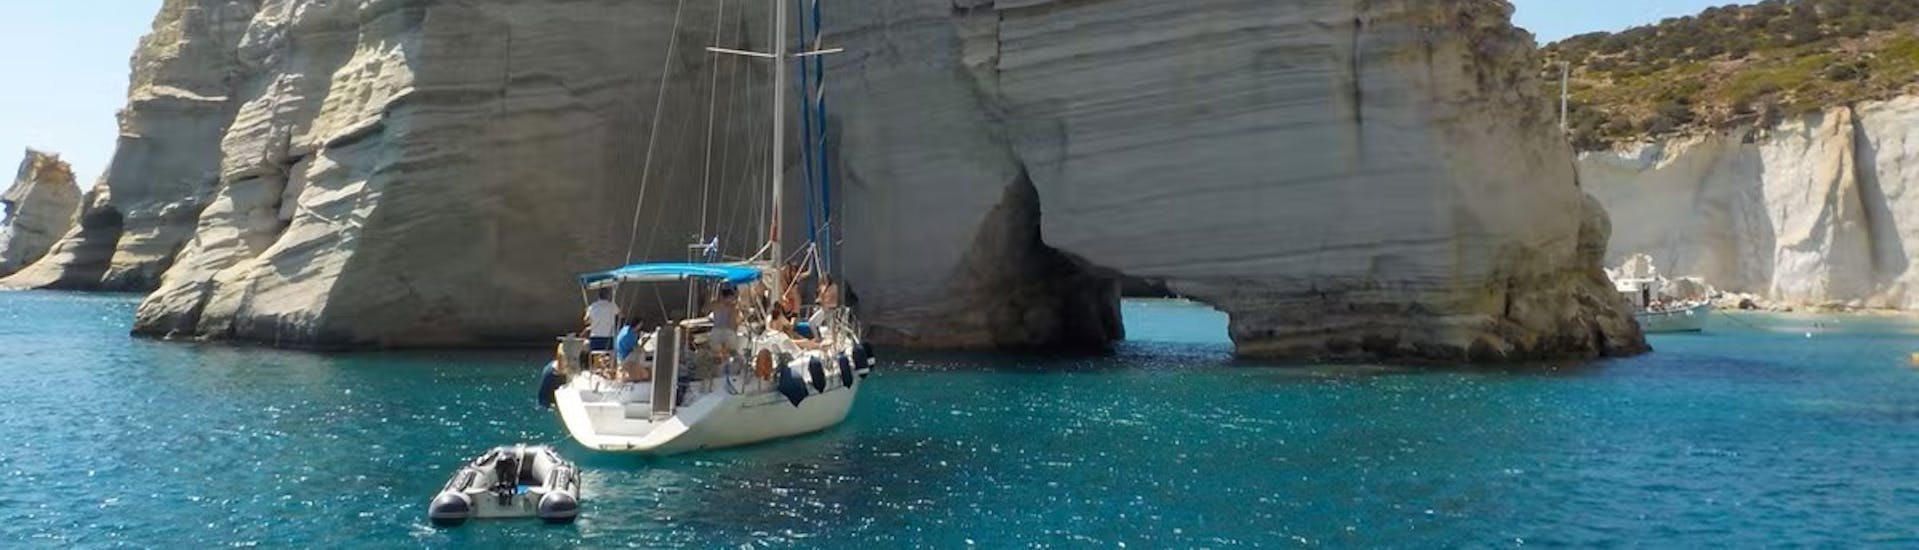 Segeln durch Kleftiko während der Segelbootstour um Milos & Polyaigos mit Mittagessen mit Polco Sailing Milos.